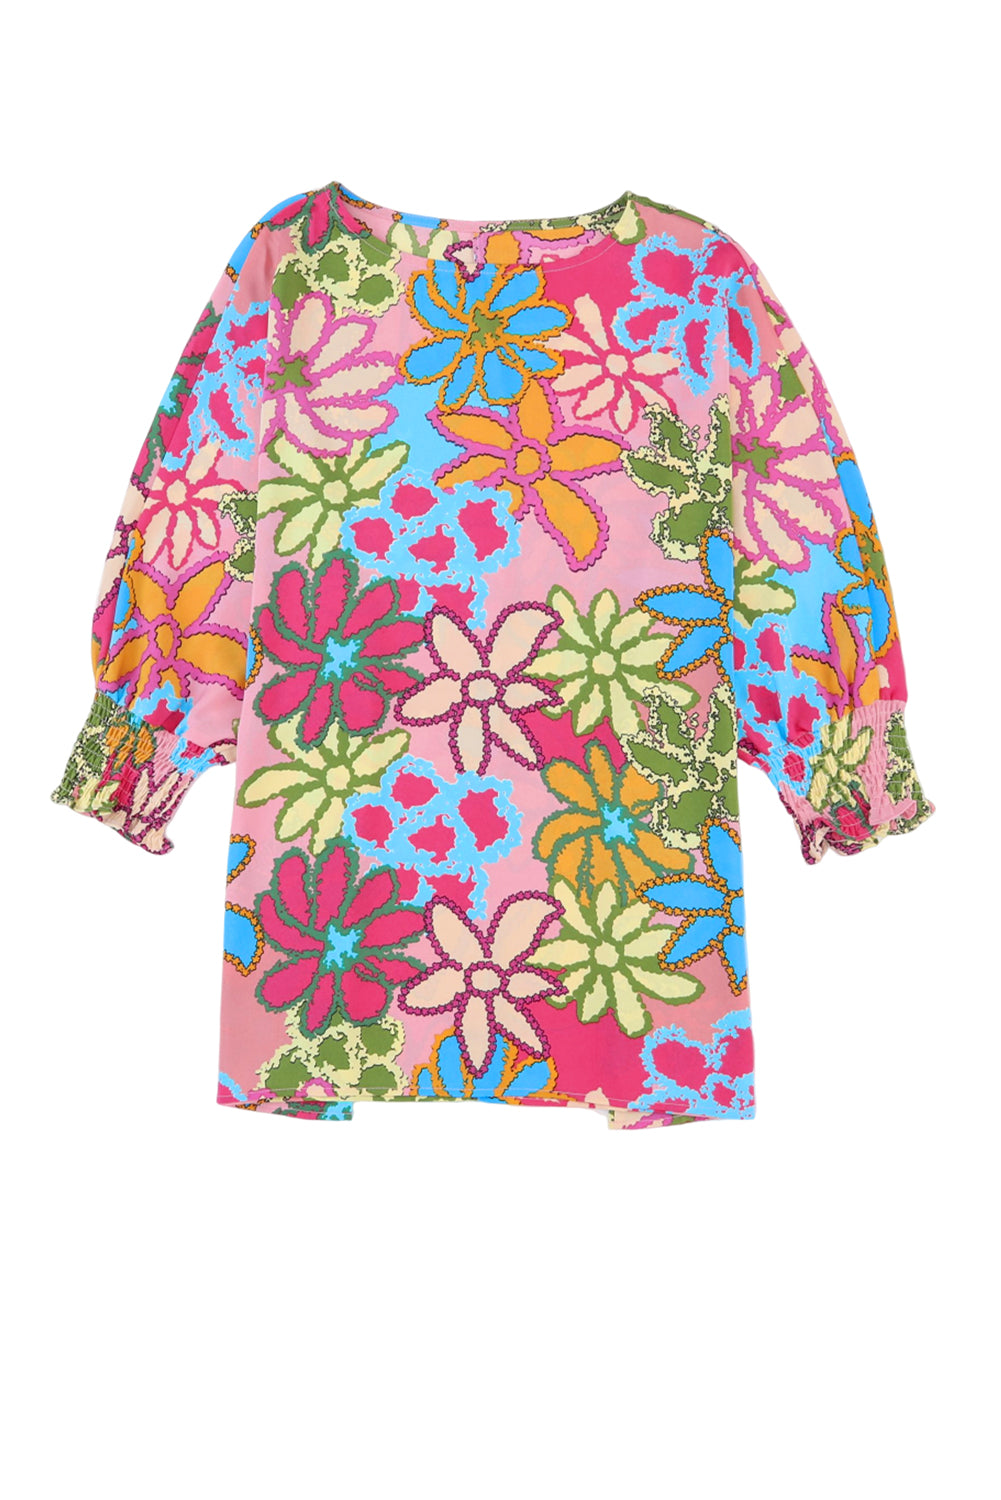 Rožnata bluza z zapestnicami in cvetličnim potiskom